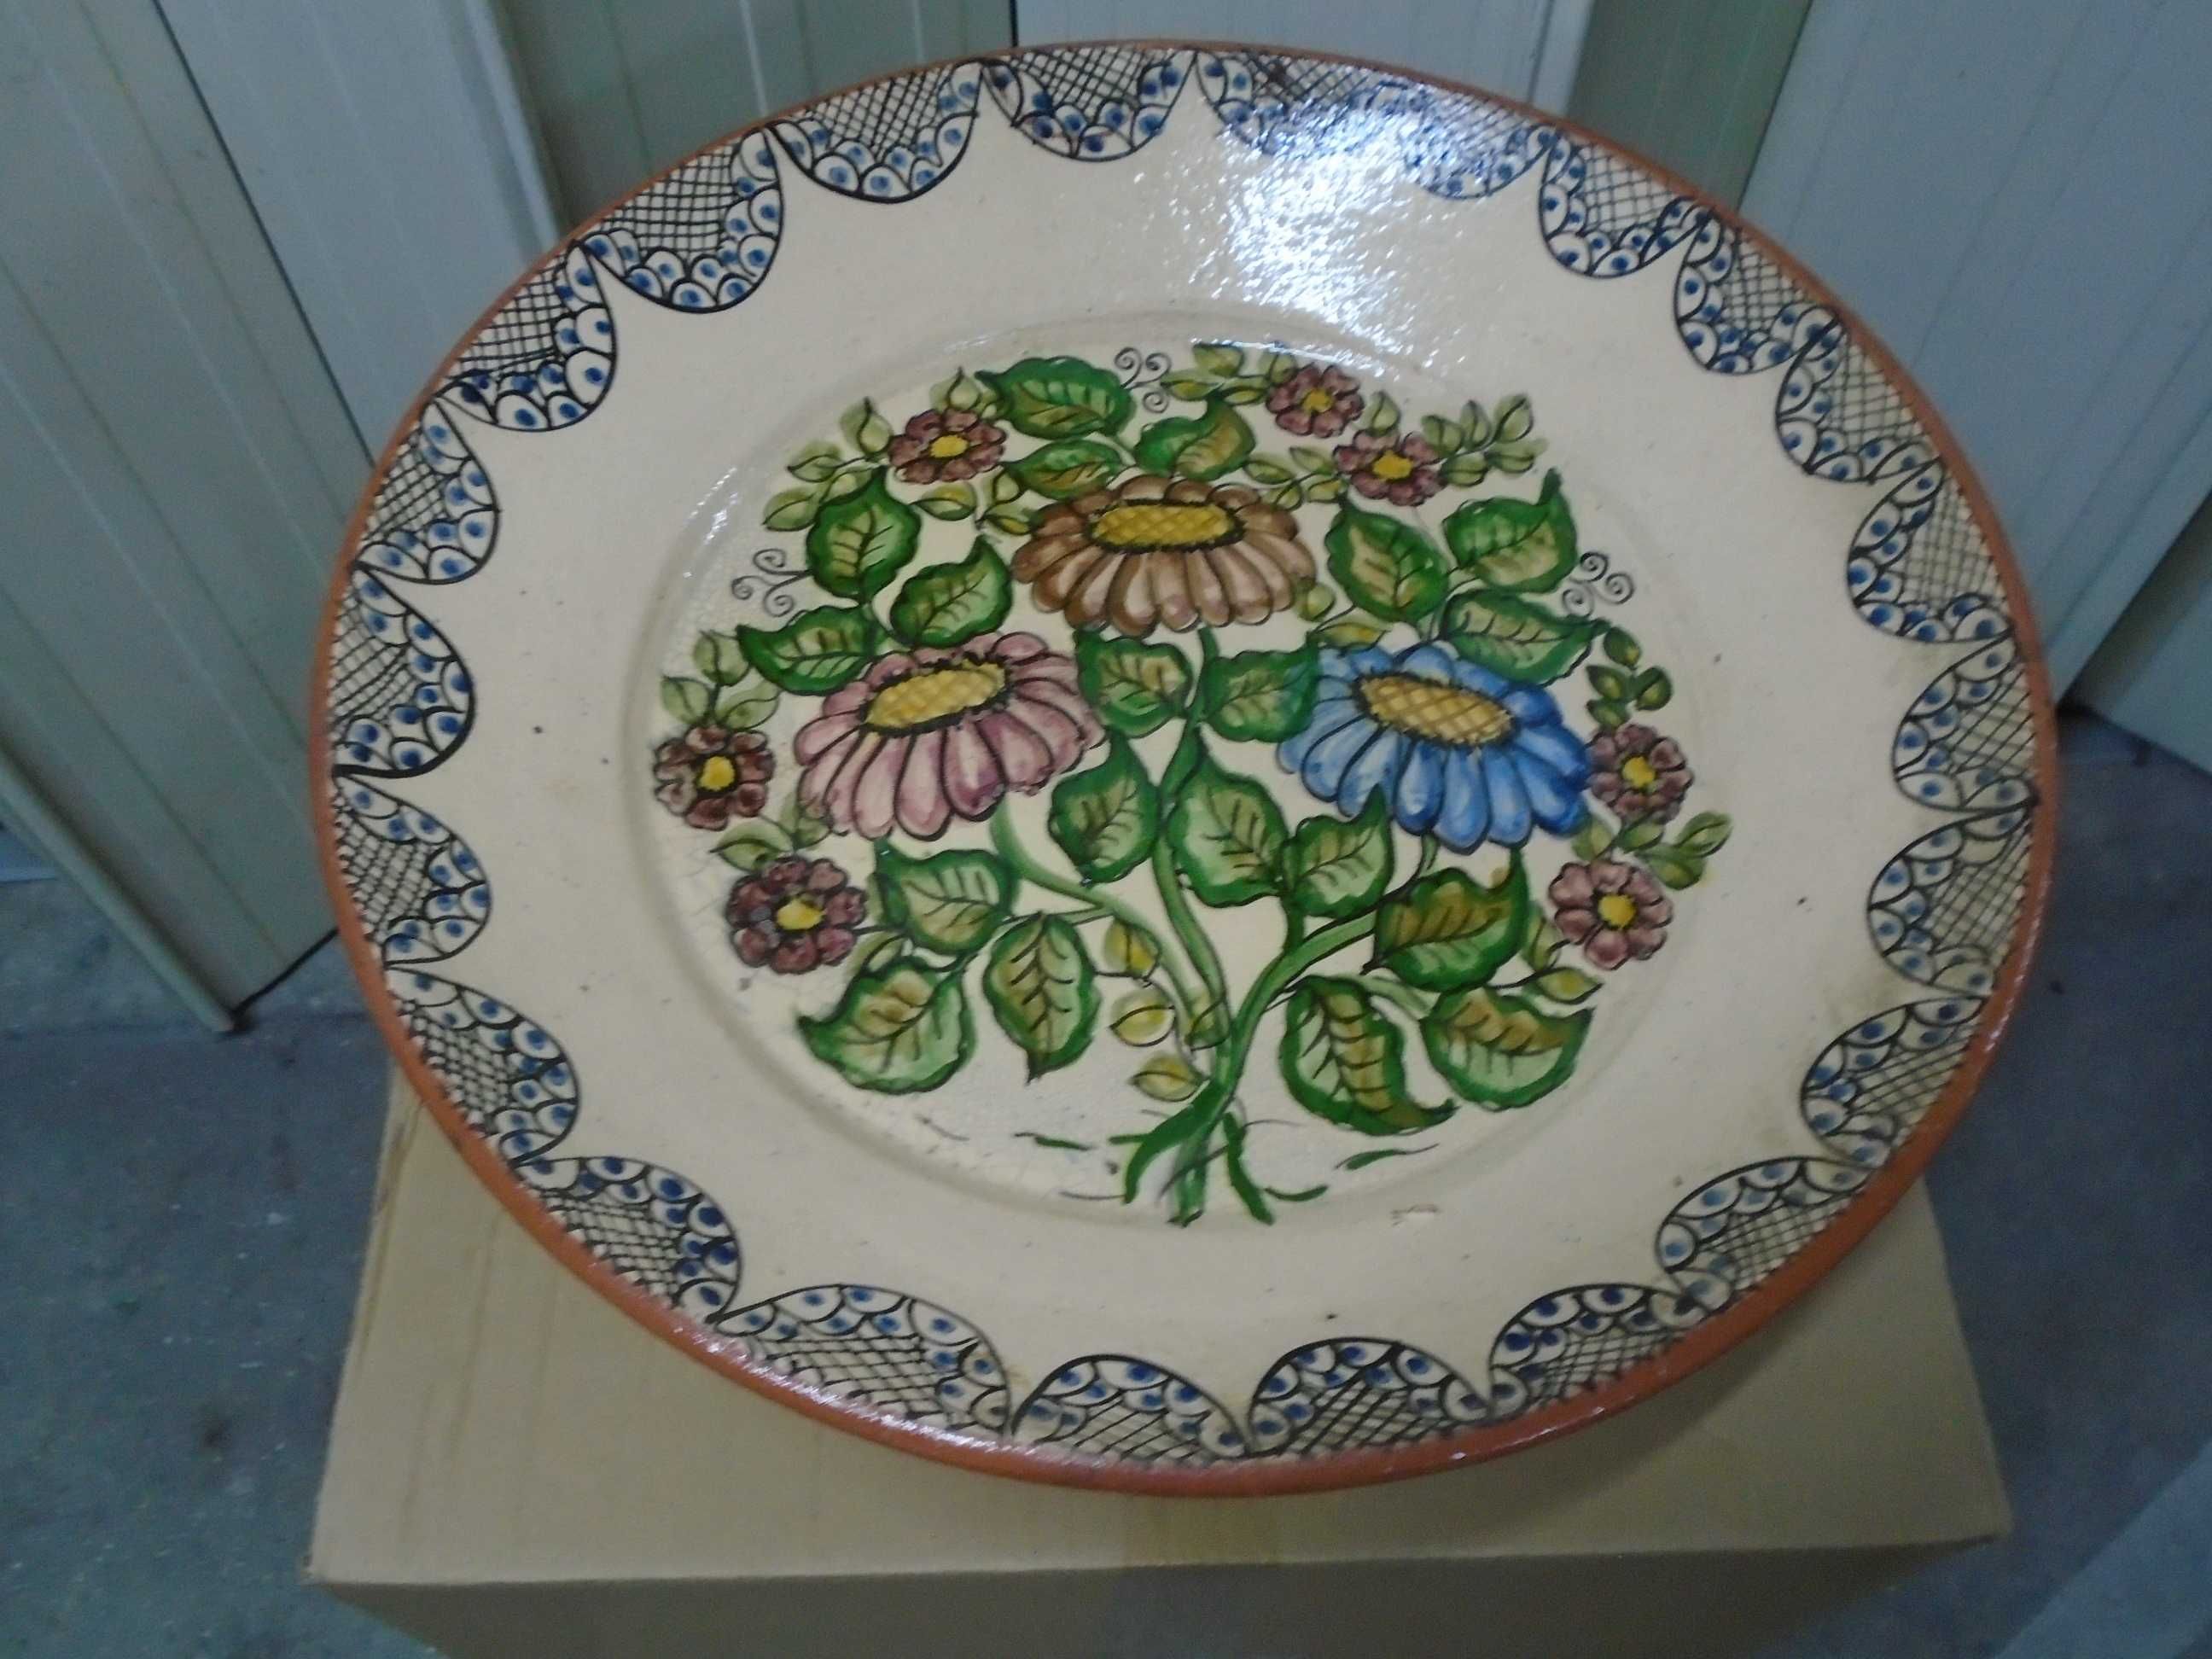 Grande prato em barro com decoração floral (diâmetro 48 cm)